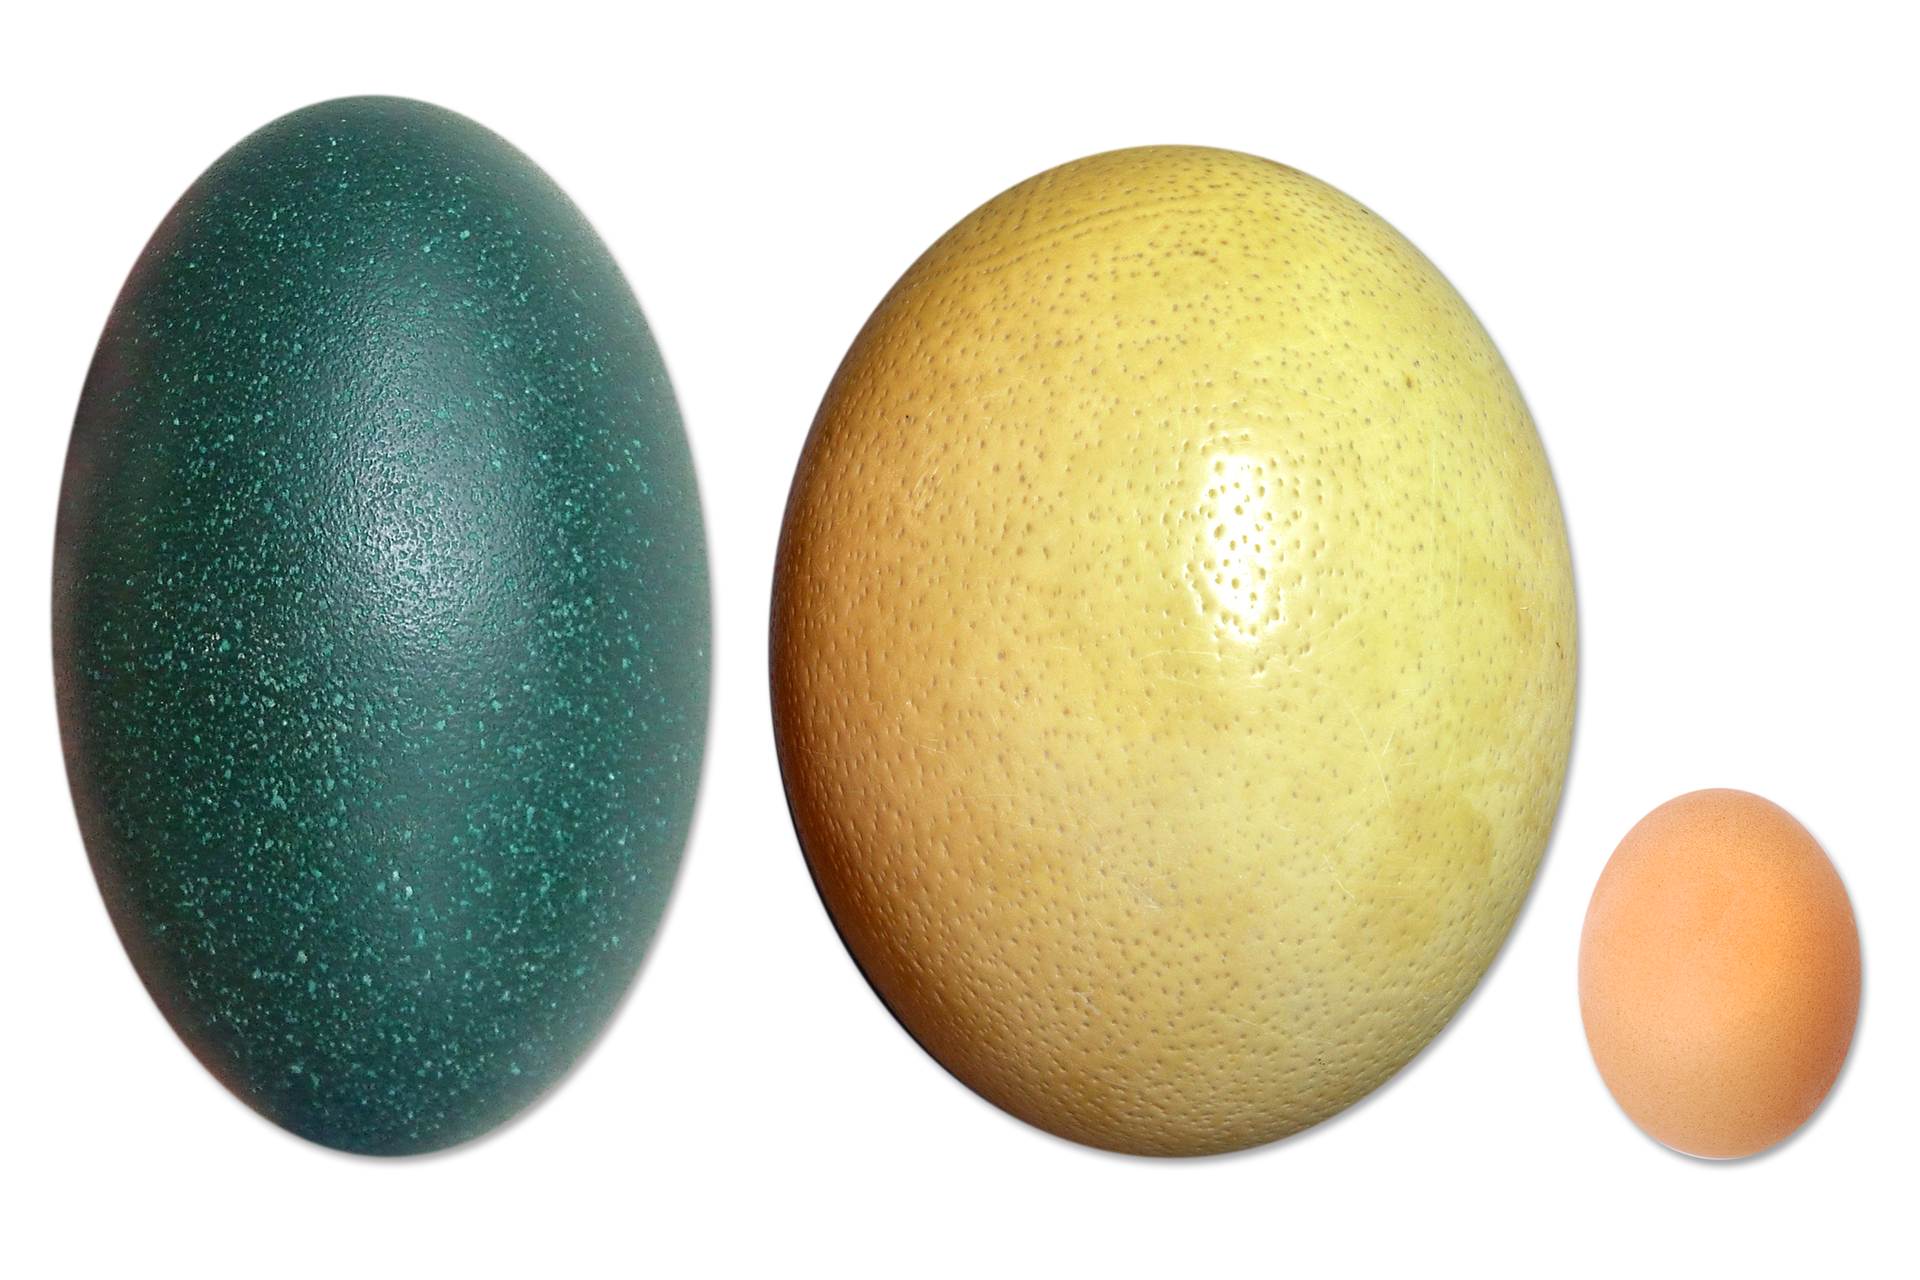 Zdjęcie przedstawiające jaja strusia afrykańskiego, australijskiego emu i kury. Jaja różnią się wielkością, kształtem i kolorem.